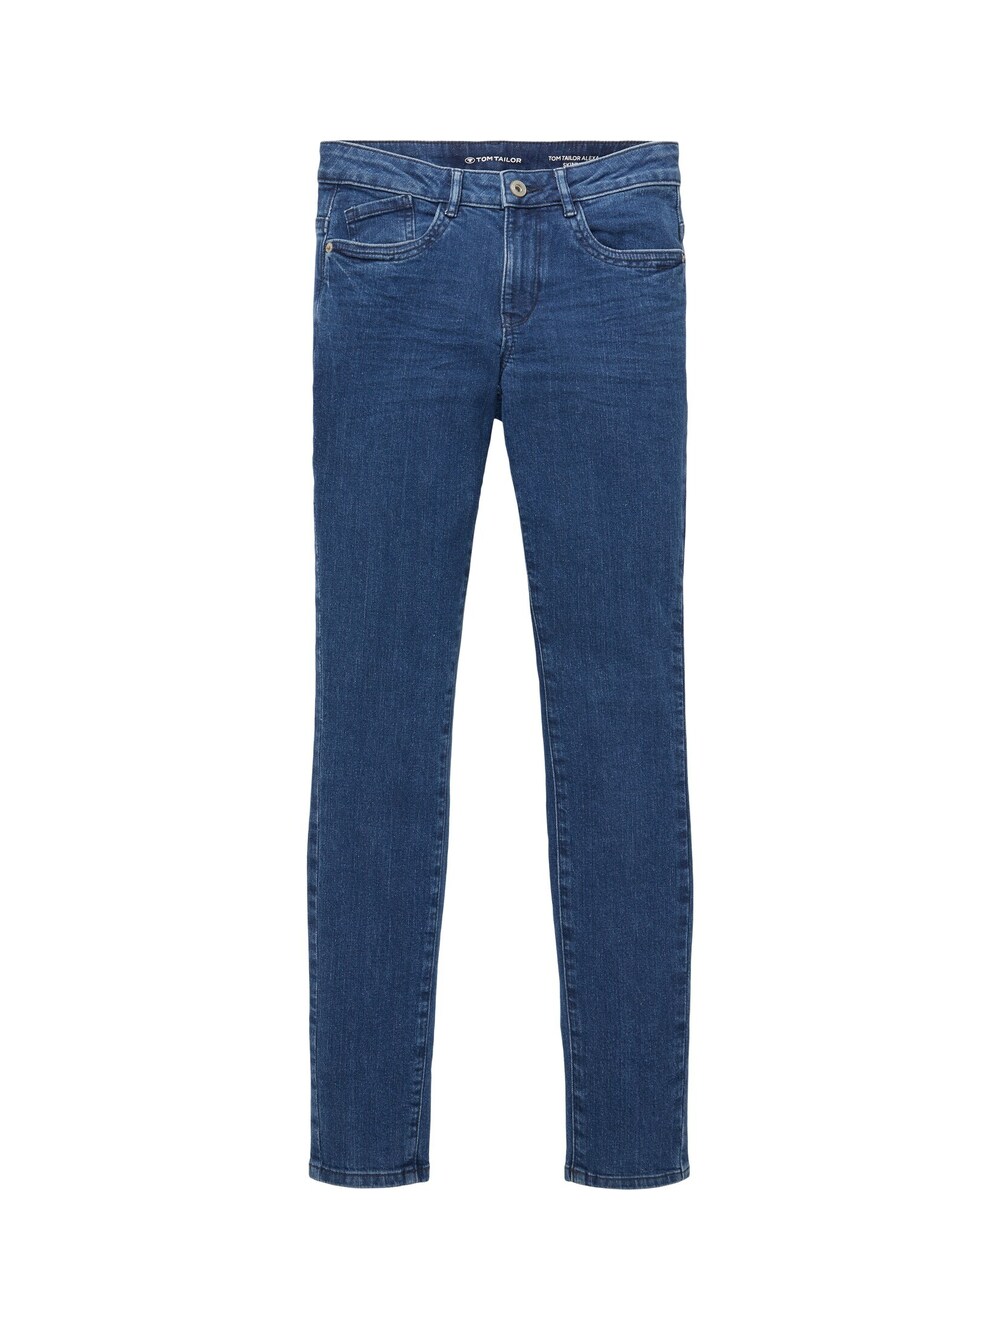 Узкие джинсы Tom Tailor Alexa, синий